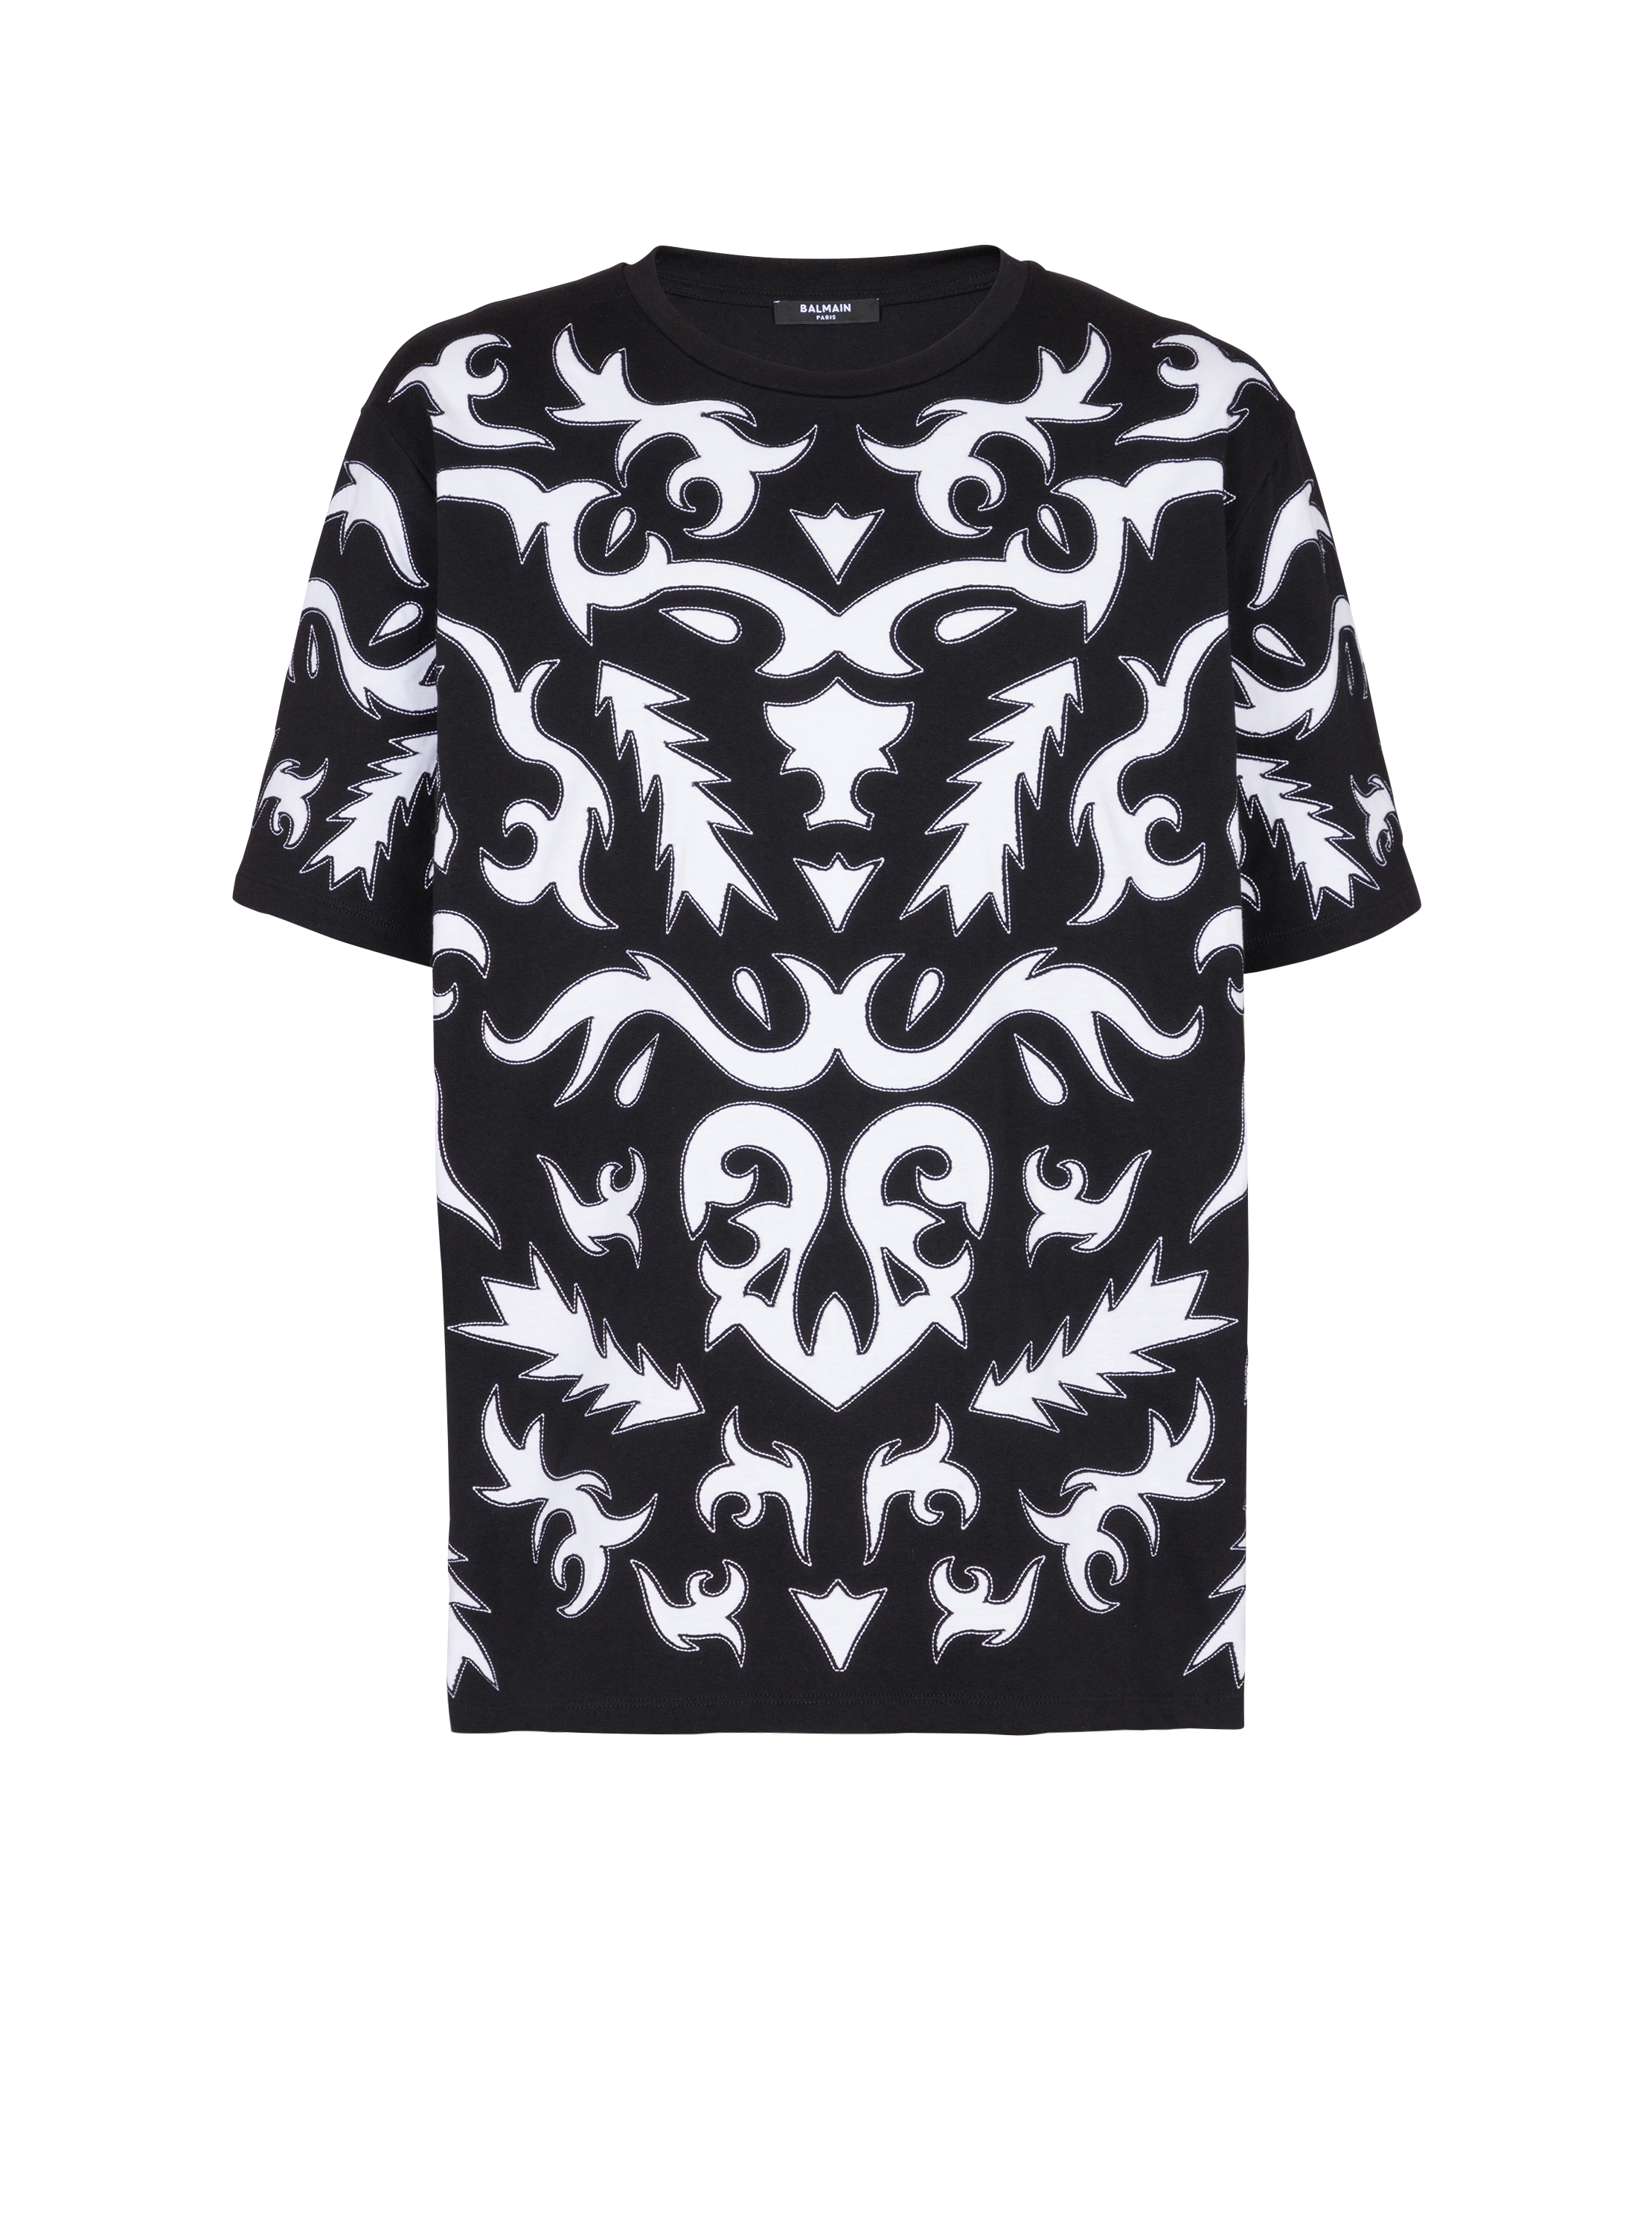 Camiseta oversize con estampado Baroque cortado a láser, negro, hi-res